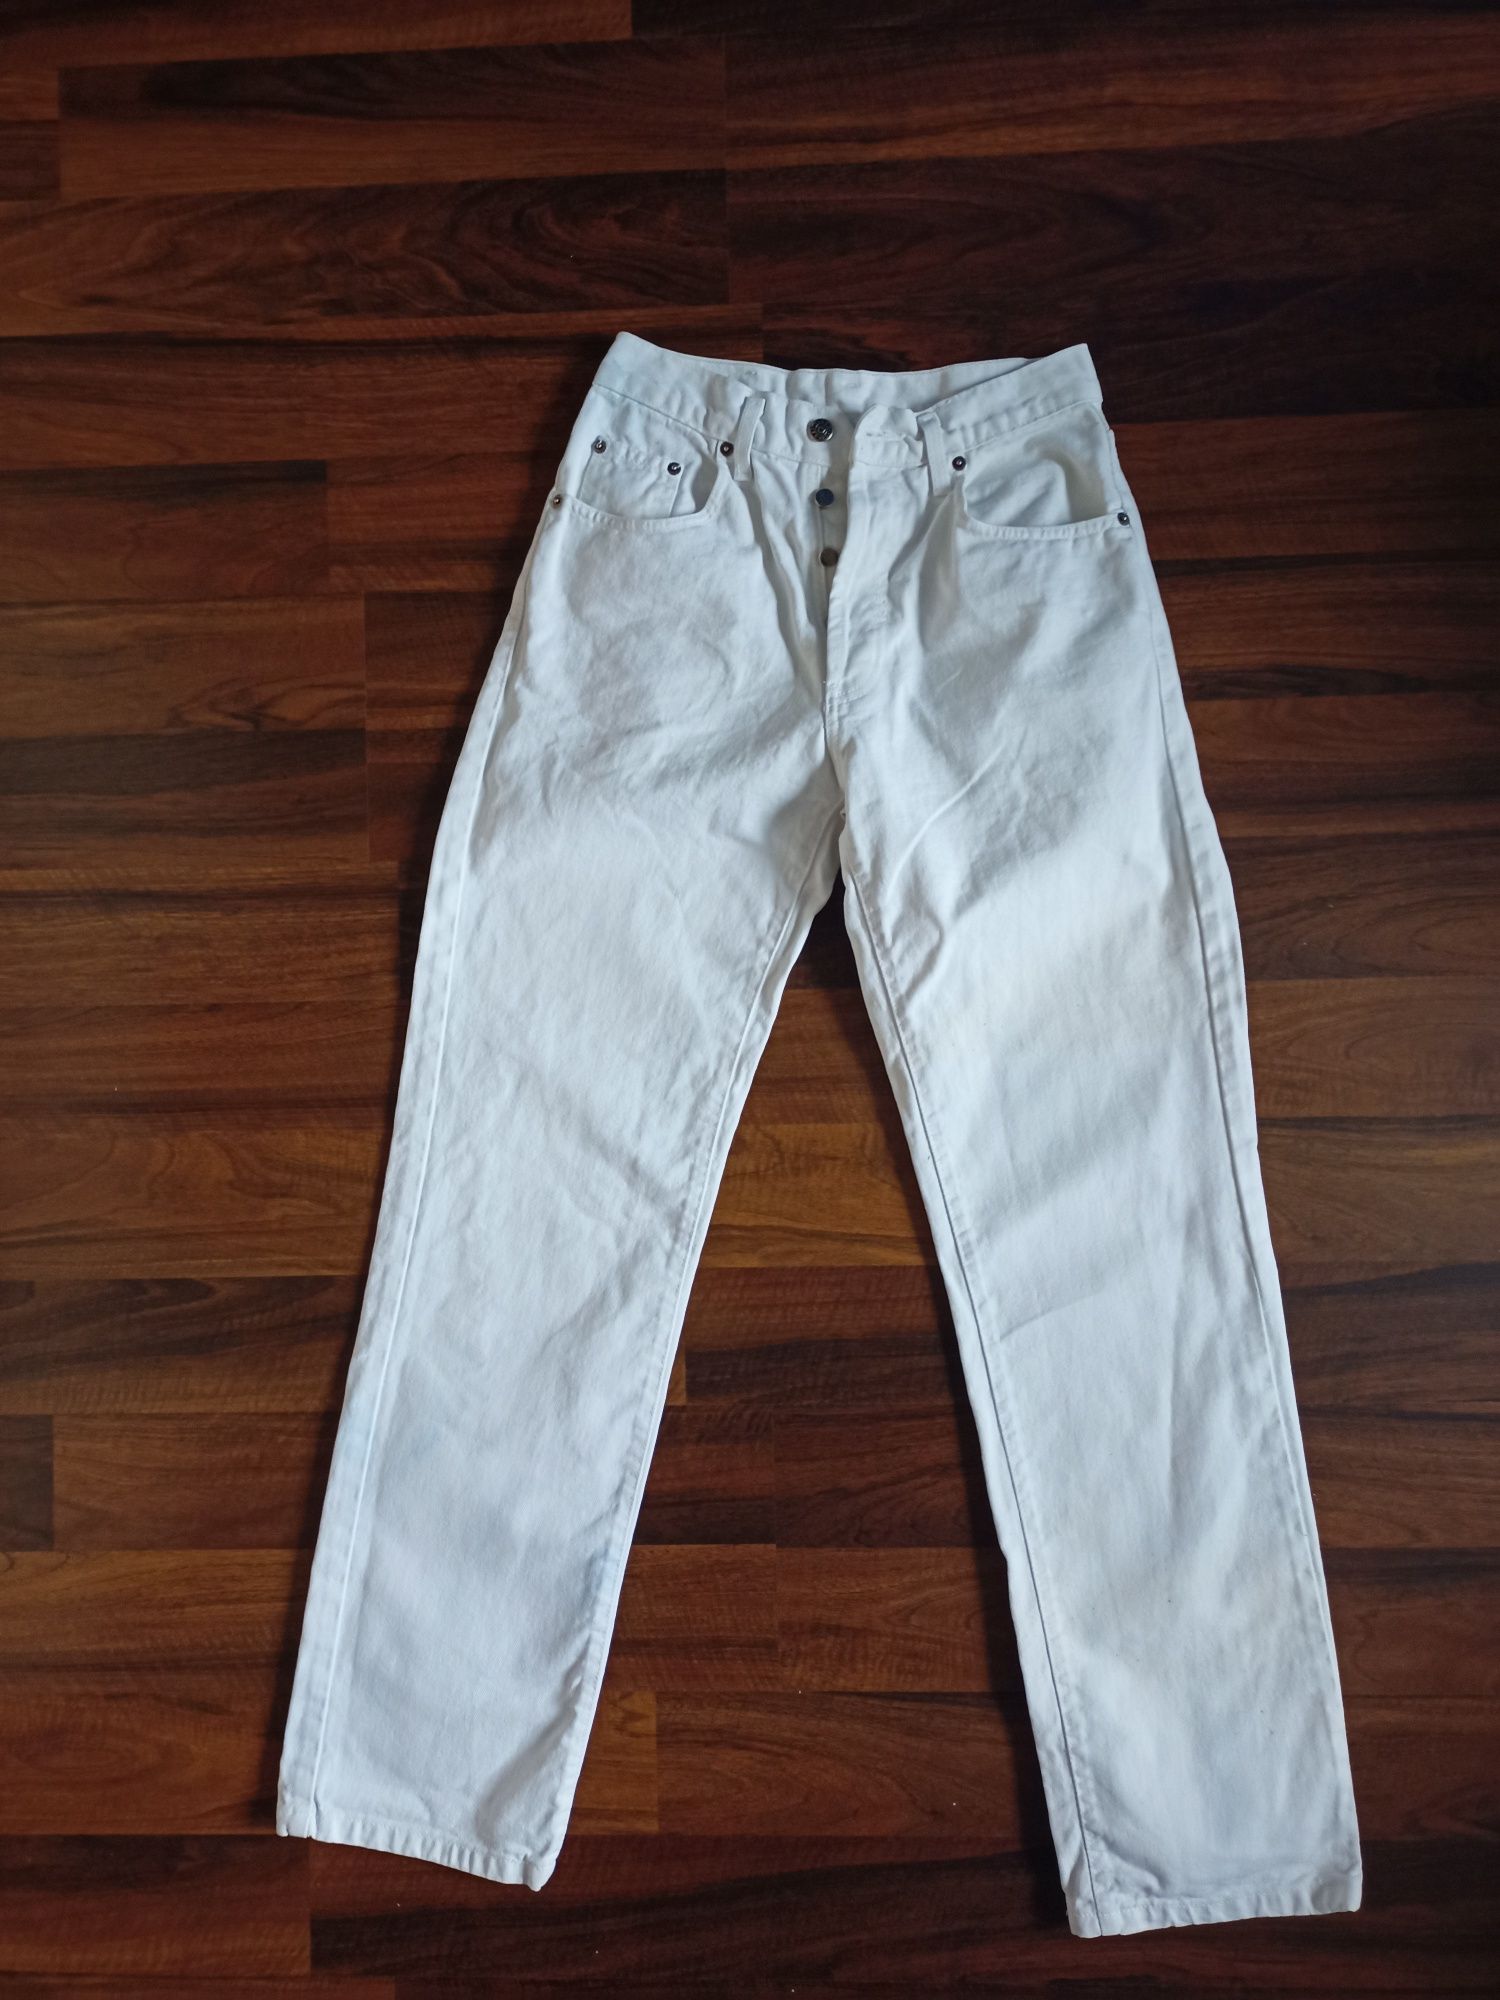 Duncan spodnie W 29 L 34 białe jeansy dżinsy jeans dżins biel lato